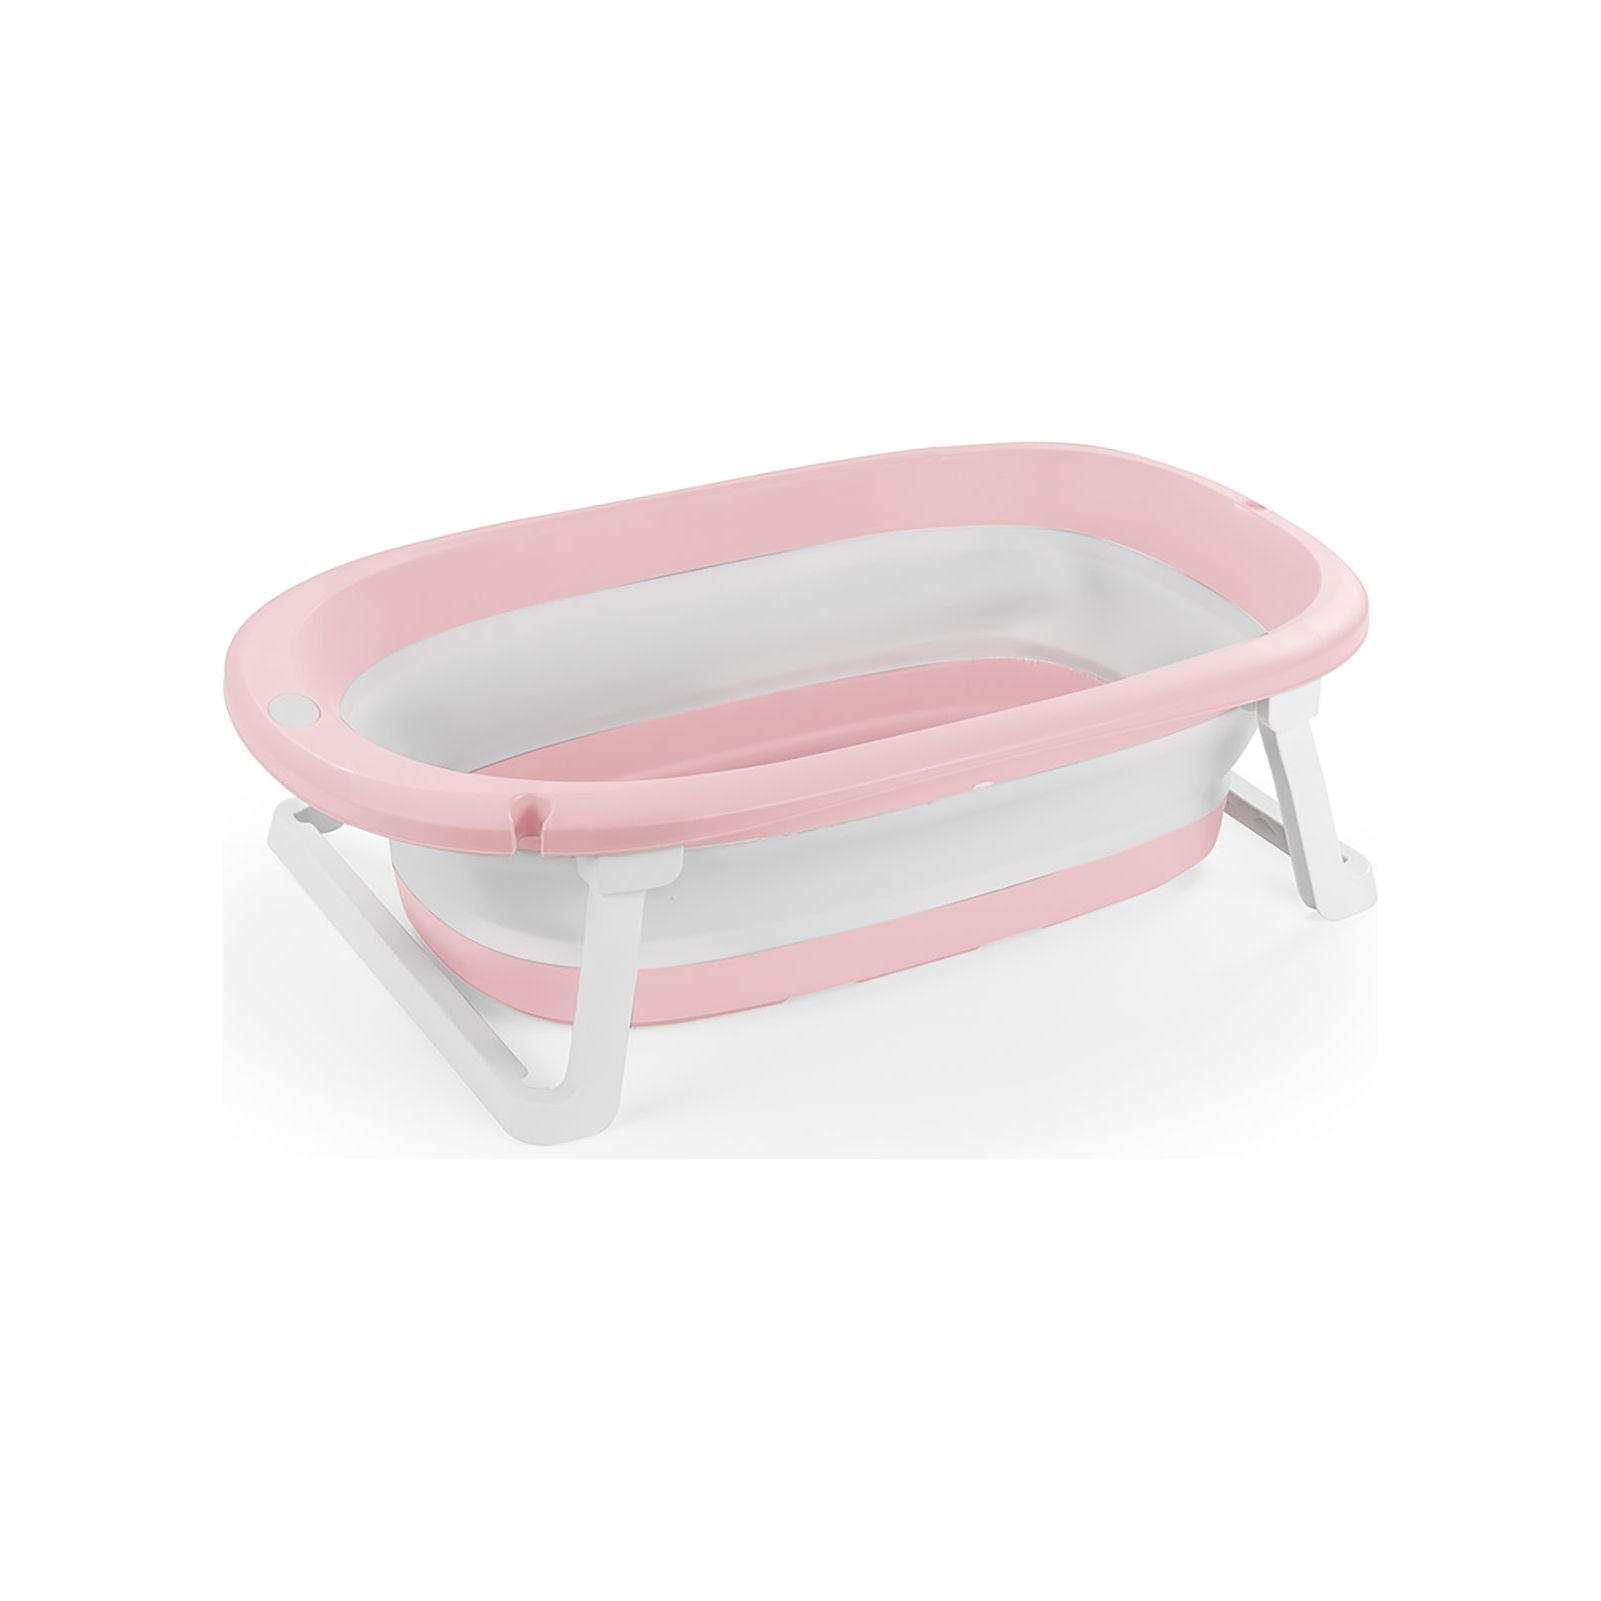 Dolu 7260 Foldable Bathtub - Pink